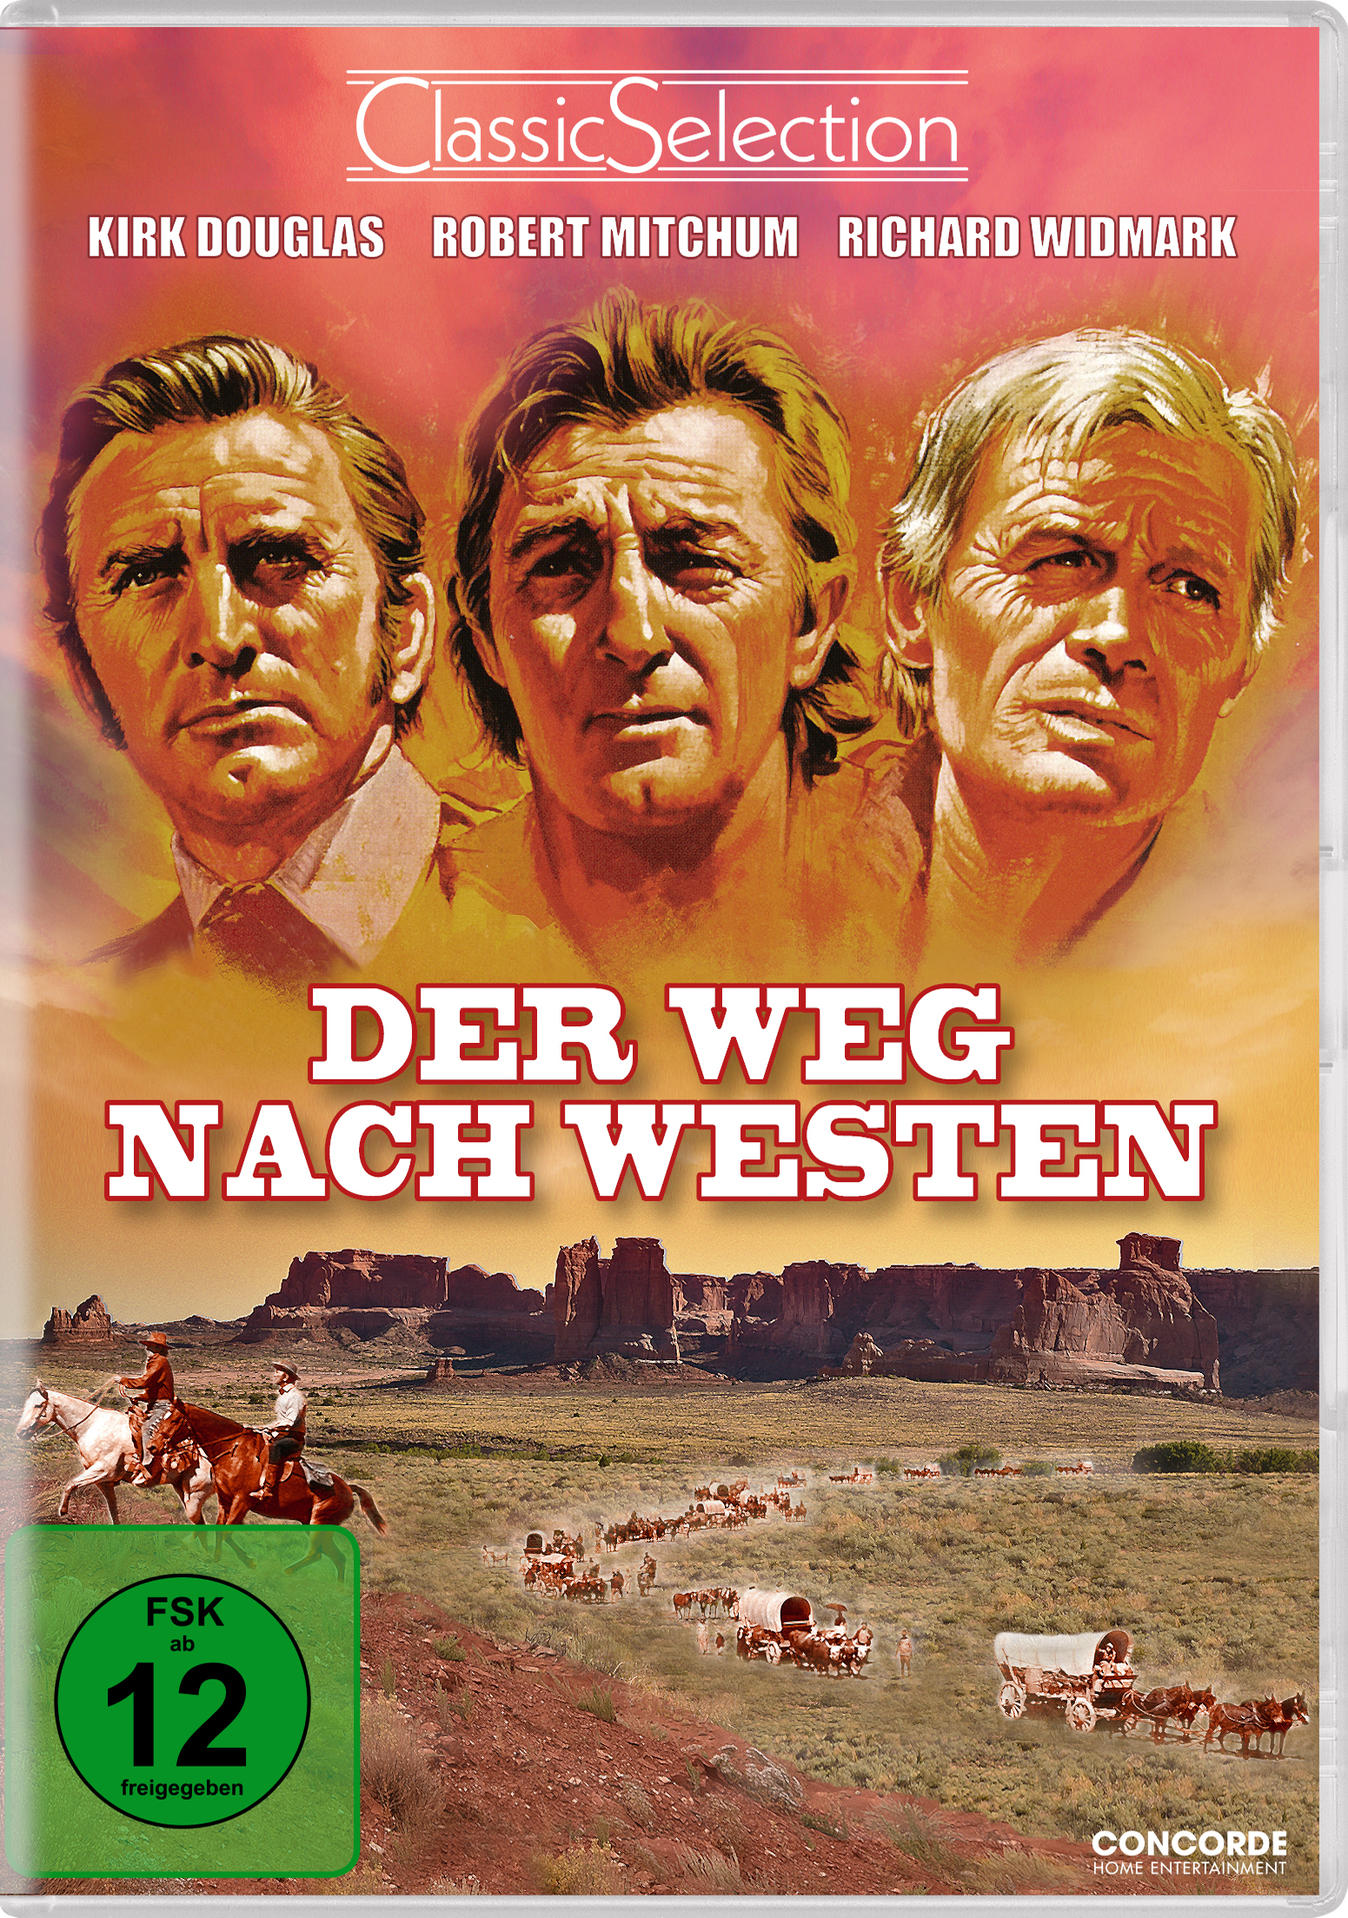 DVD Westen Der nach Weg